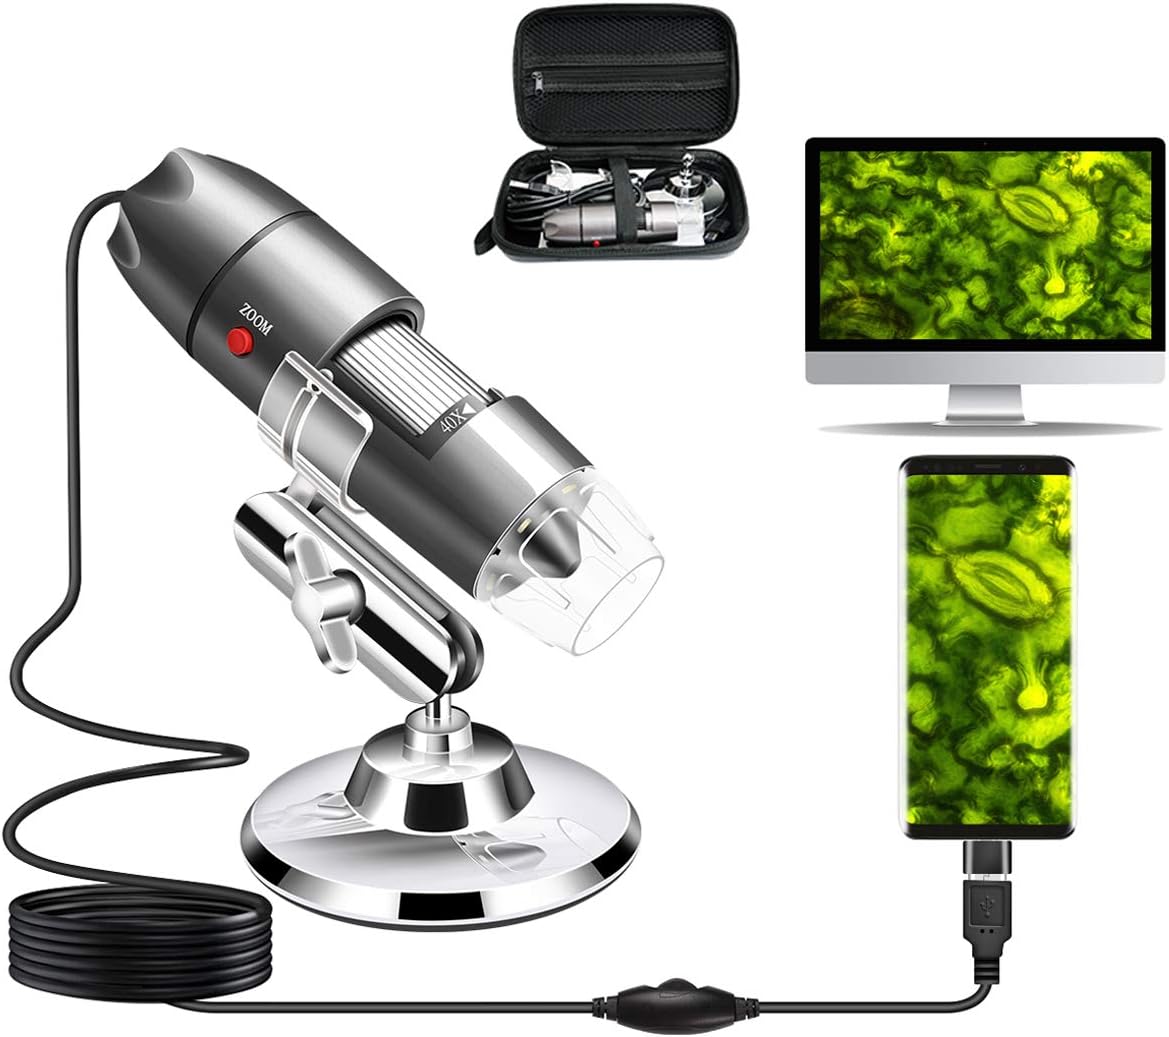 Meilleur microscope de poche : guide d'achat et comparatif